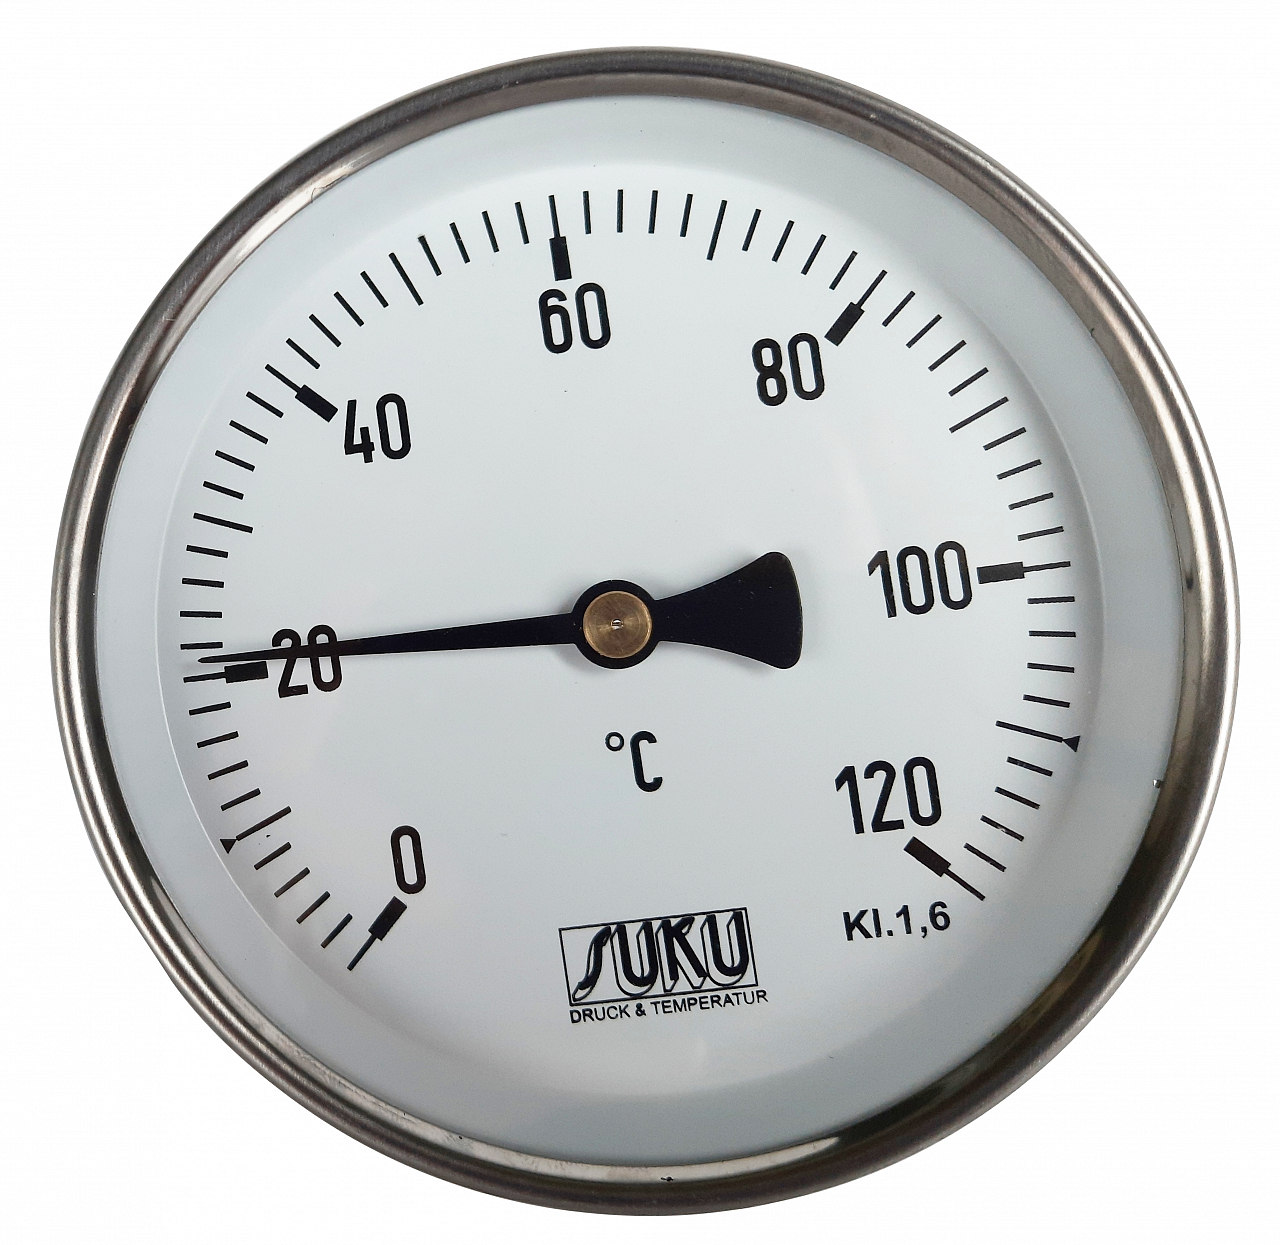 PIMALDAUM® Bimetall-Thermometer 0-120°C, Durchmesser 63 mm, mit